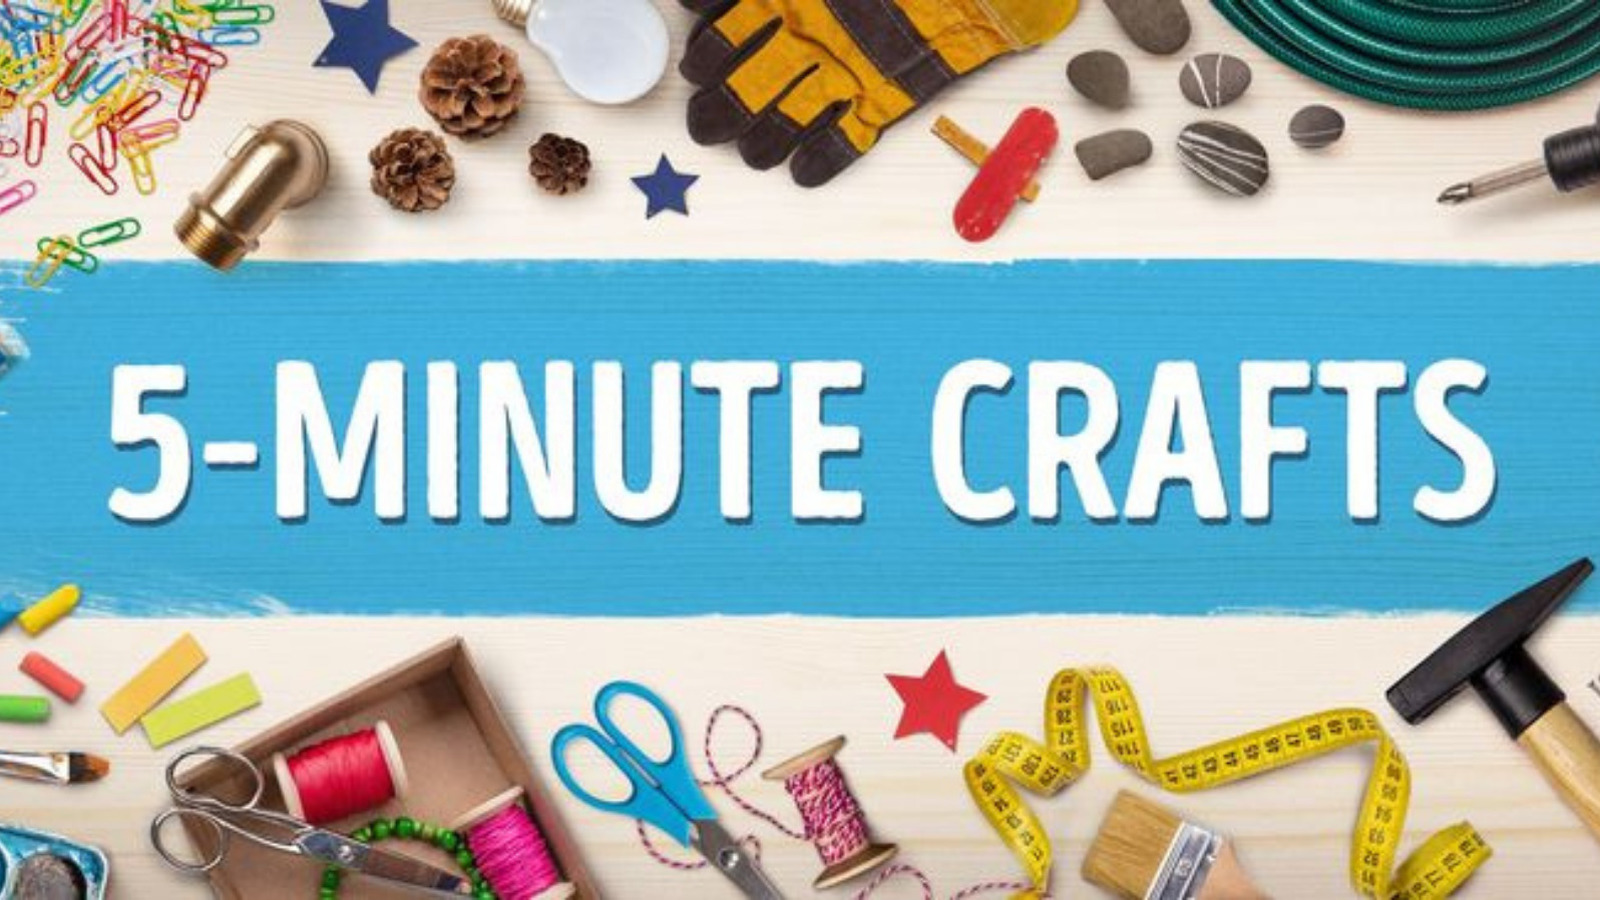 신규 업데이트 5-Minute Crafts - Total View, Income, Subscriber 분석